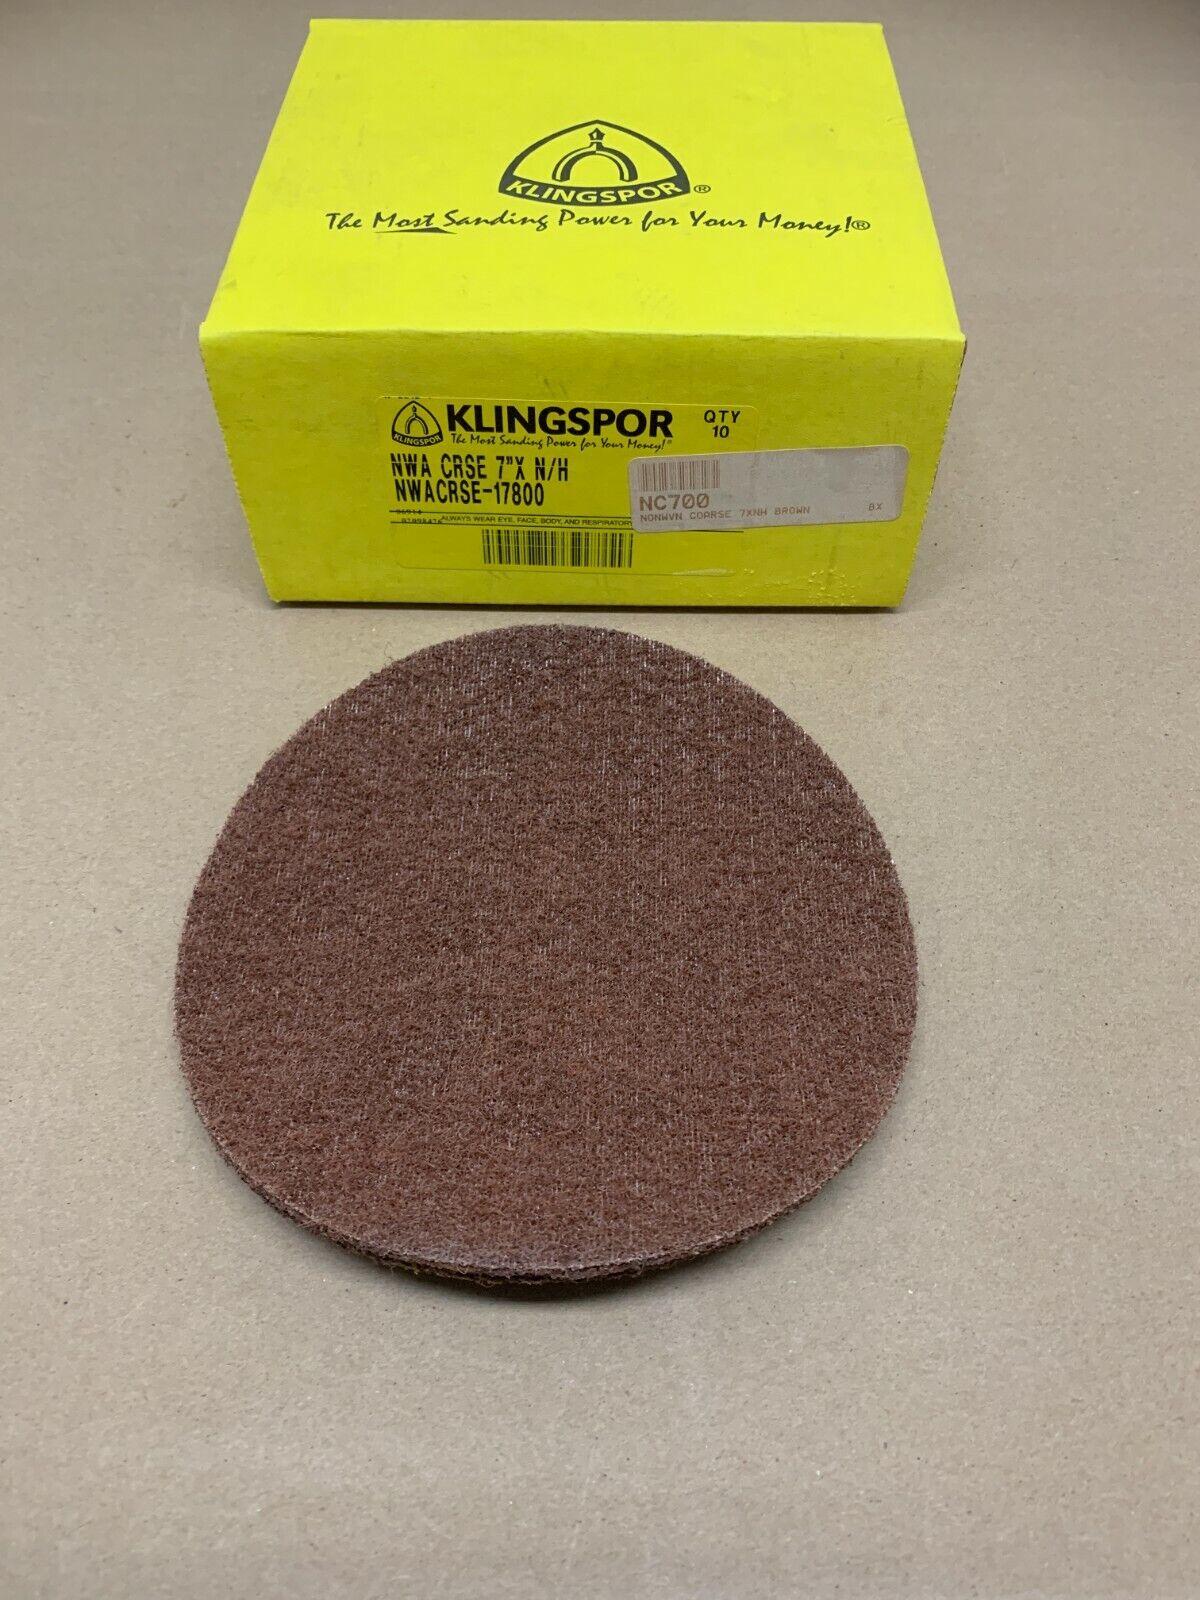 Klingspor Non-Woven Coarse 7"XNH Discs NWACRSE-17800